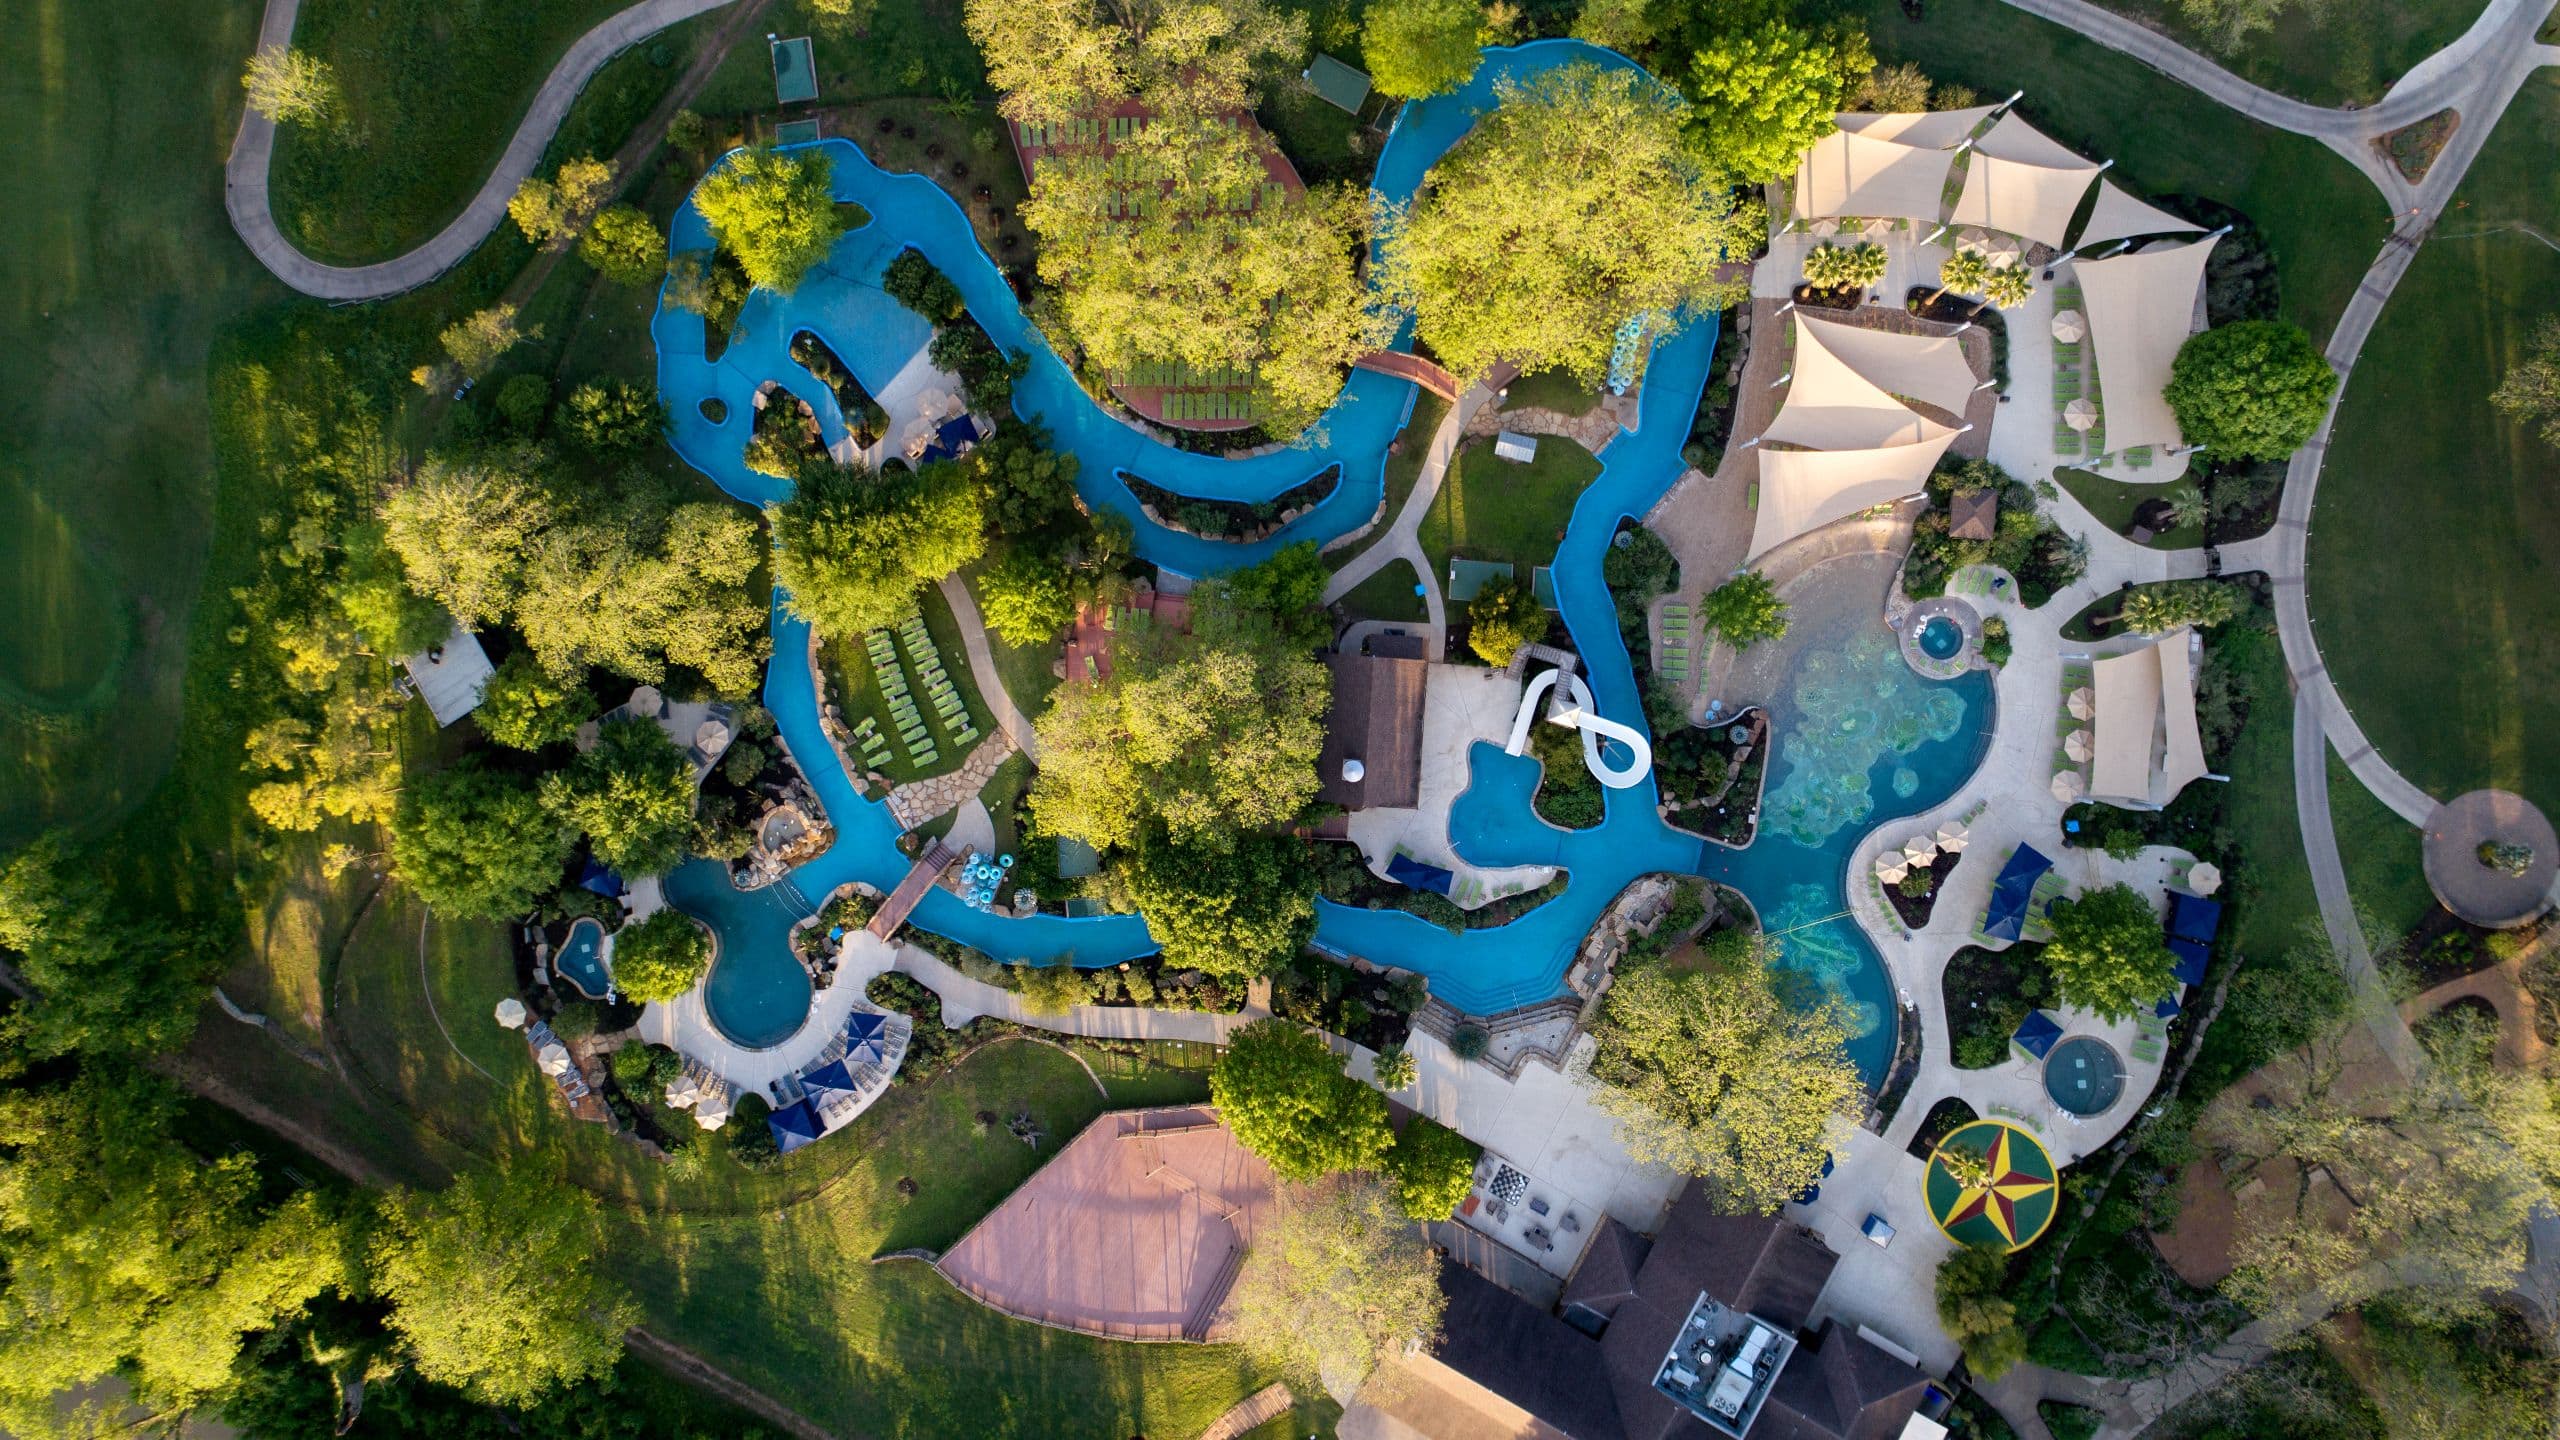 Hyatt Regency Lost Pines Resort and Spa Aerial View of Property